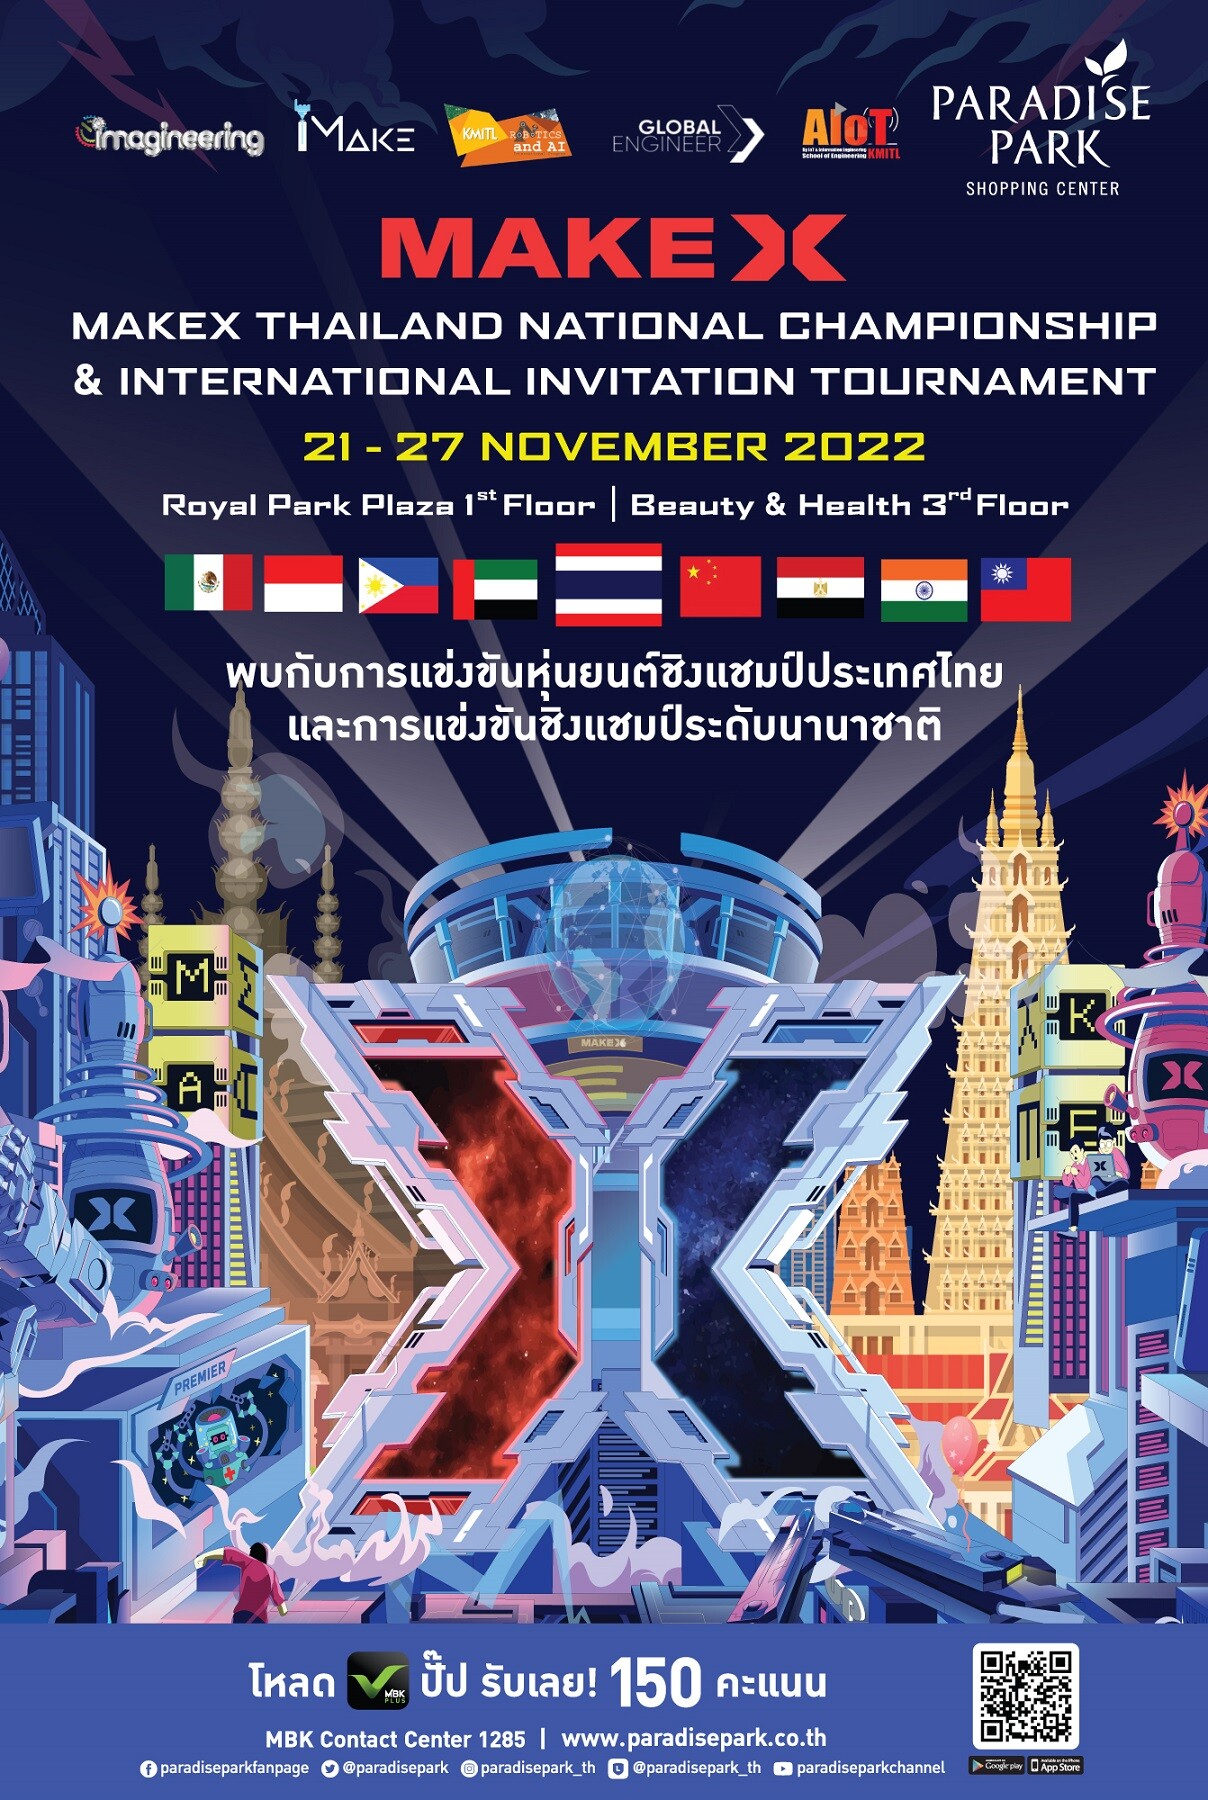 พาราไดซ์ พาร์ค เปิดพื้นที่จัดการแข่งขันหุ่นยนต์ชิงแชมป์ประเทศไทย และระดับนานาชาติ MAKEX THAILAND NATIONAL CHAMPIONSHIP & INTERNATIONAL INVITATION TOURNAMENT 2022